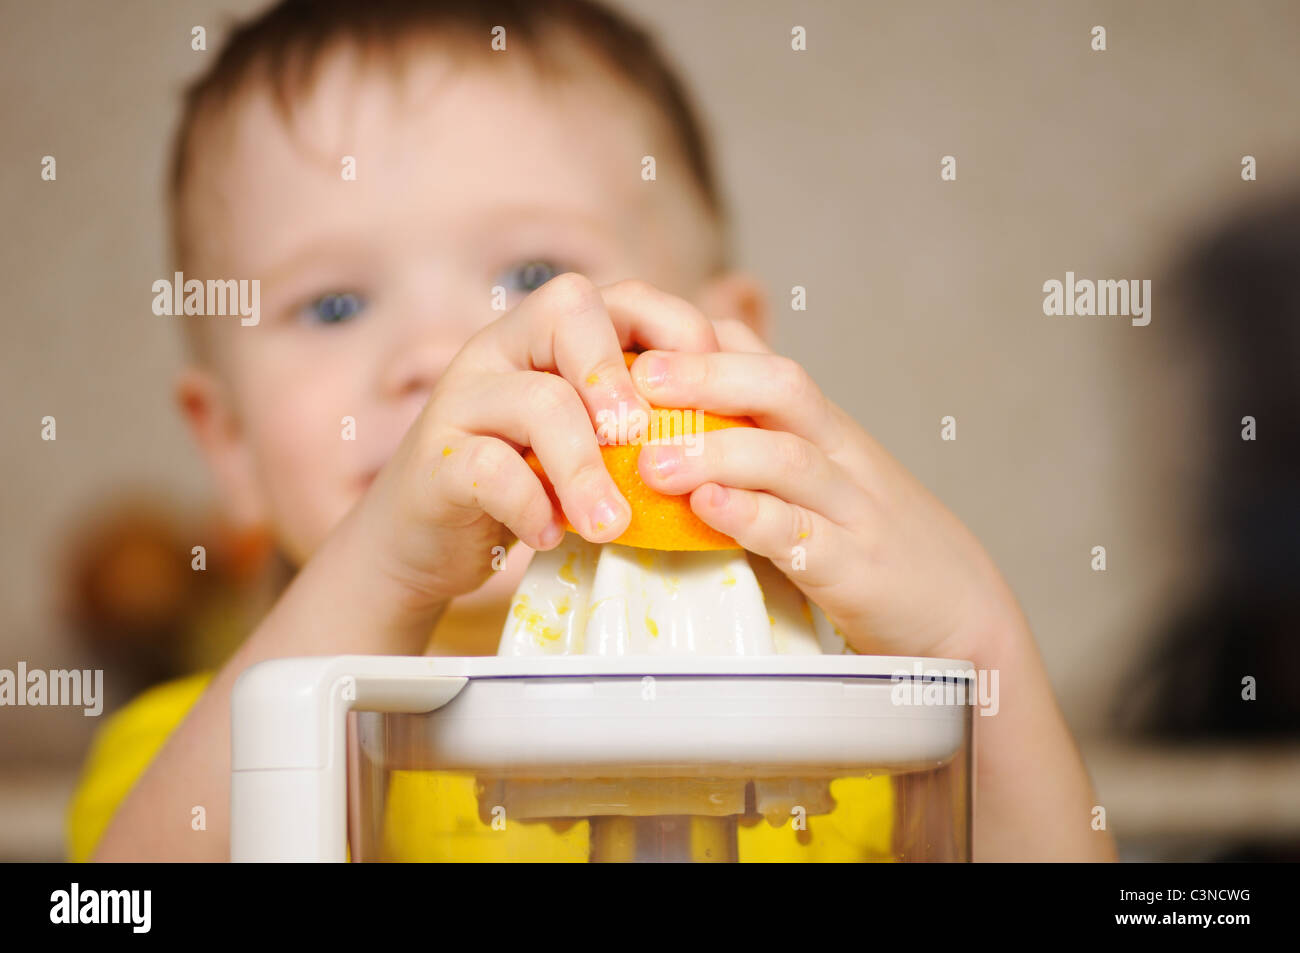 Das Kind in eine gelbe Weste, auswringen, Saft von einer orange Stockfoto